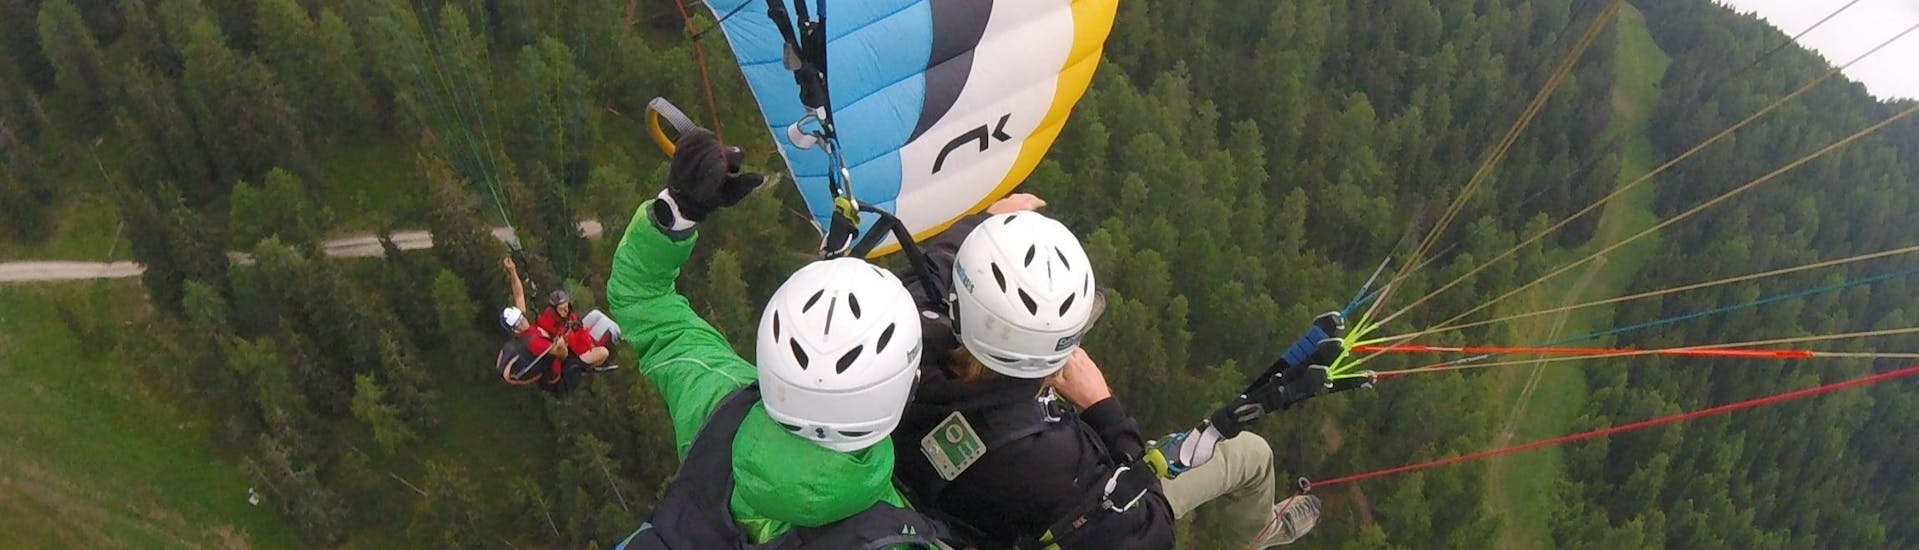 Vol en parapente panoramique à Brunico - Bruneck (dès 4 ans).